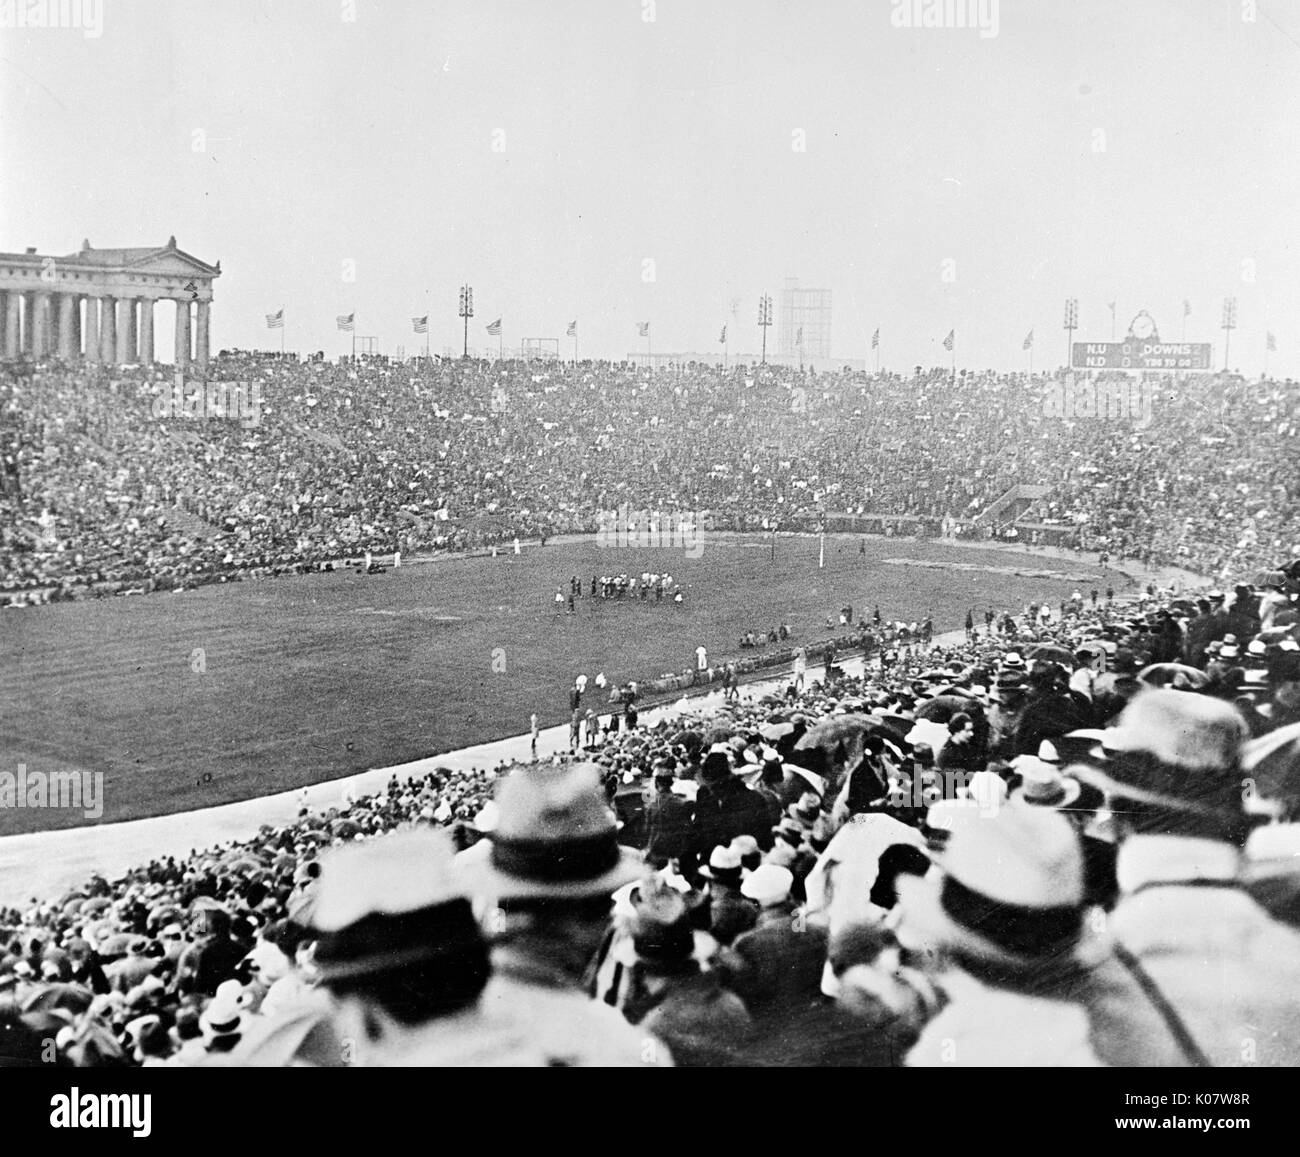 Un americano del gioco del calcio in corso al Soldier Field, Grant Park, Chicago, Illinois, Stati Uniti d'America -- Notre Dame v Northwestern, 10 ottobre 1931. Gli spettatori 75.000 numerati. È stato un pareggio (0-0 nella guida sotto la pioggia. Data: 1931 Foto Stock